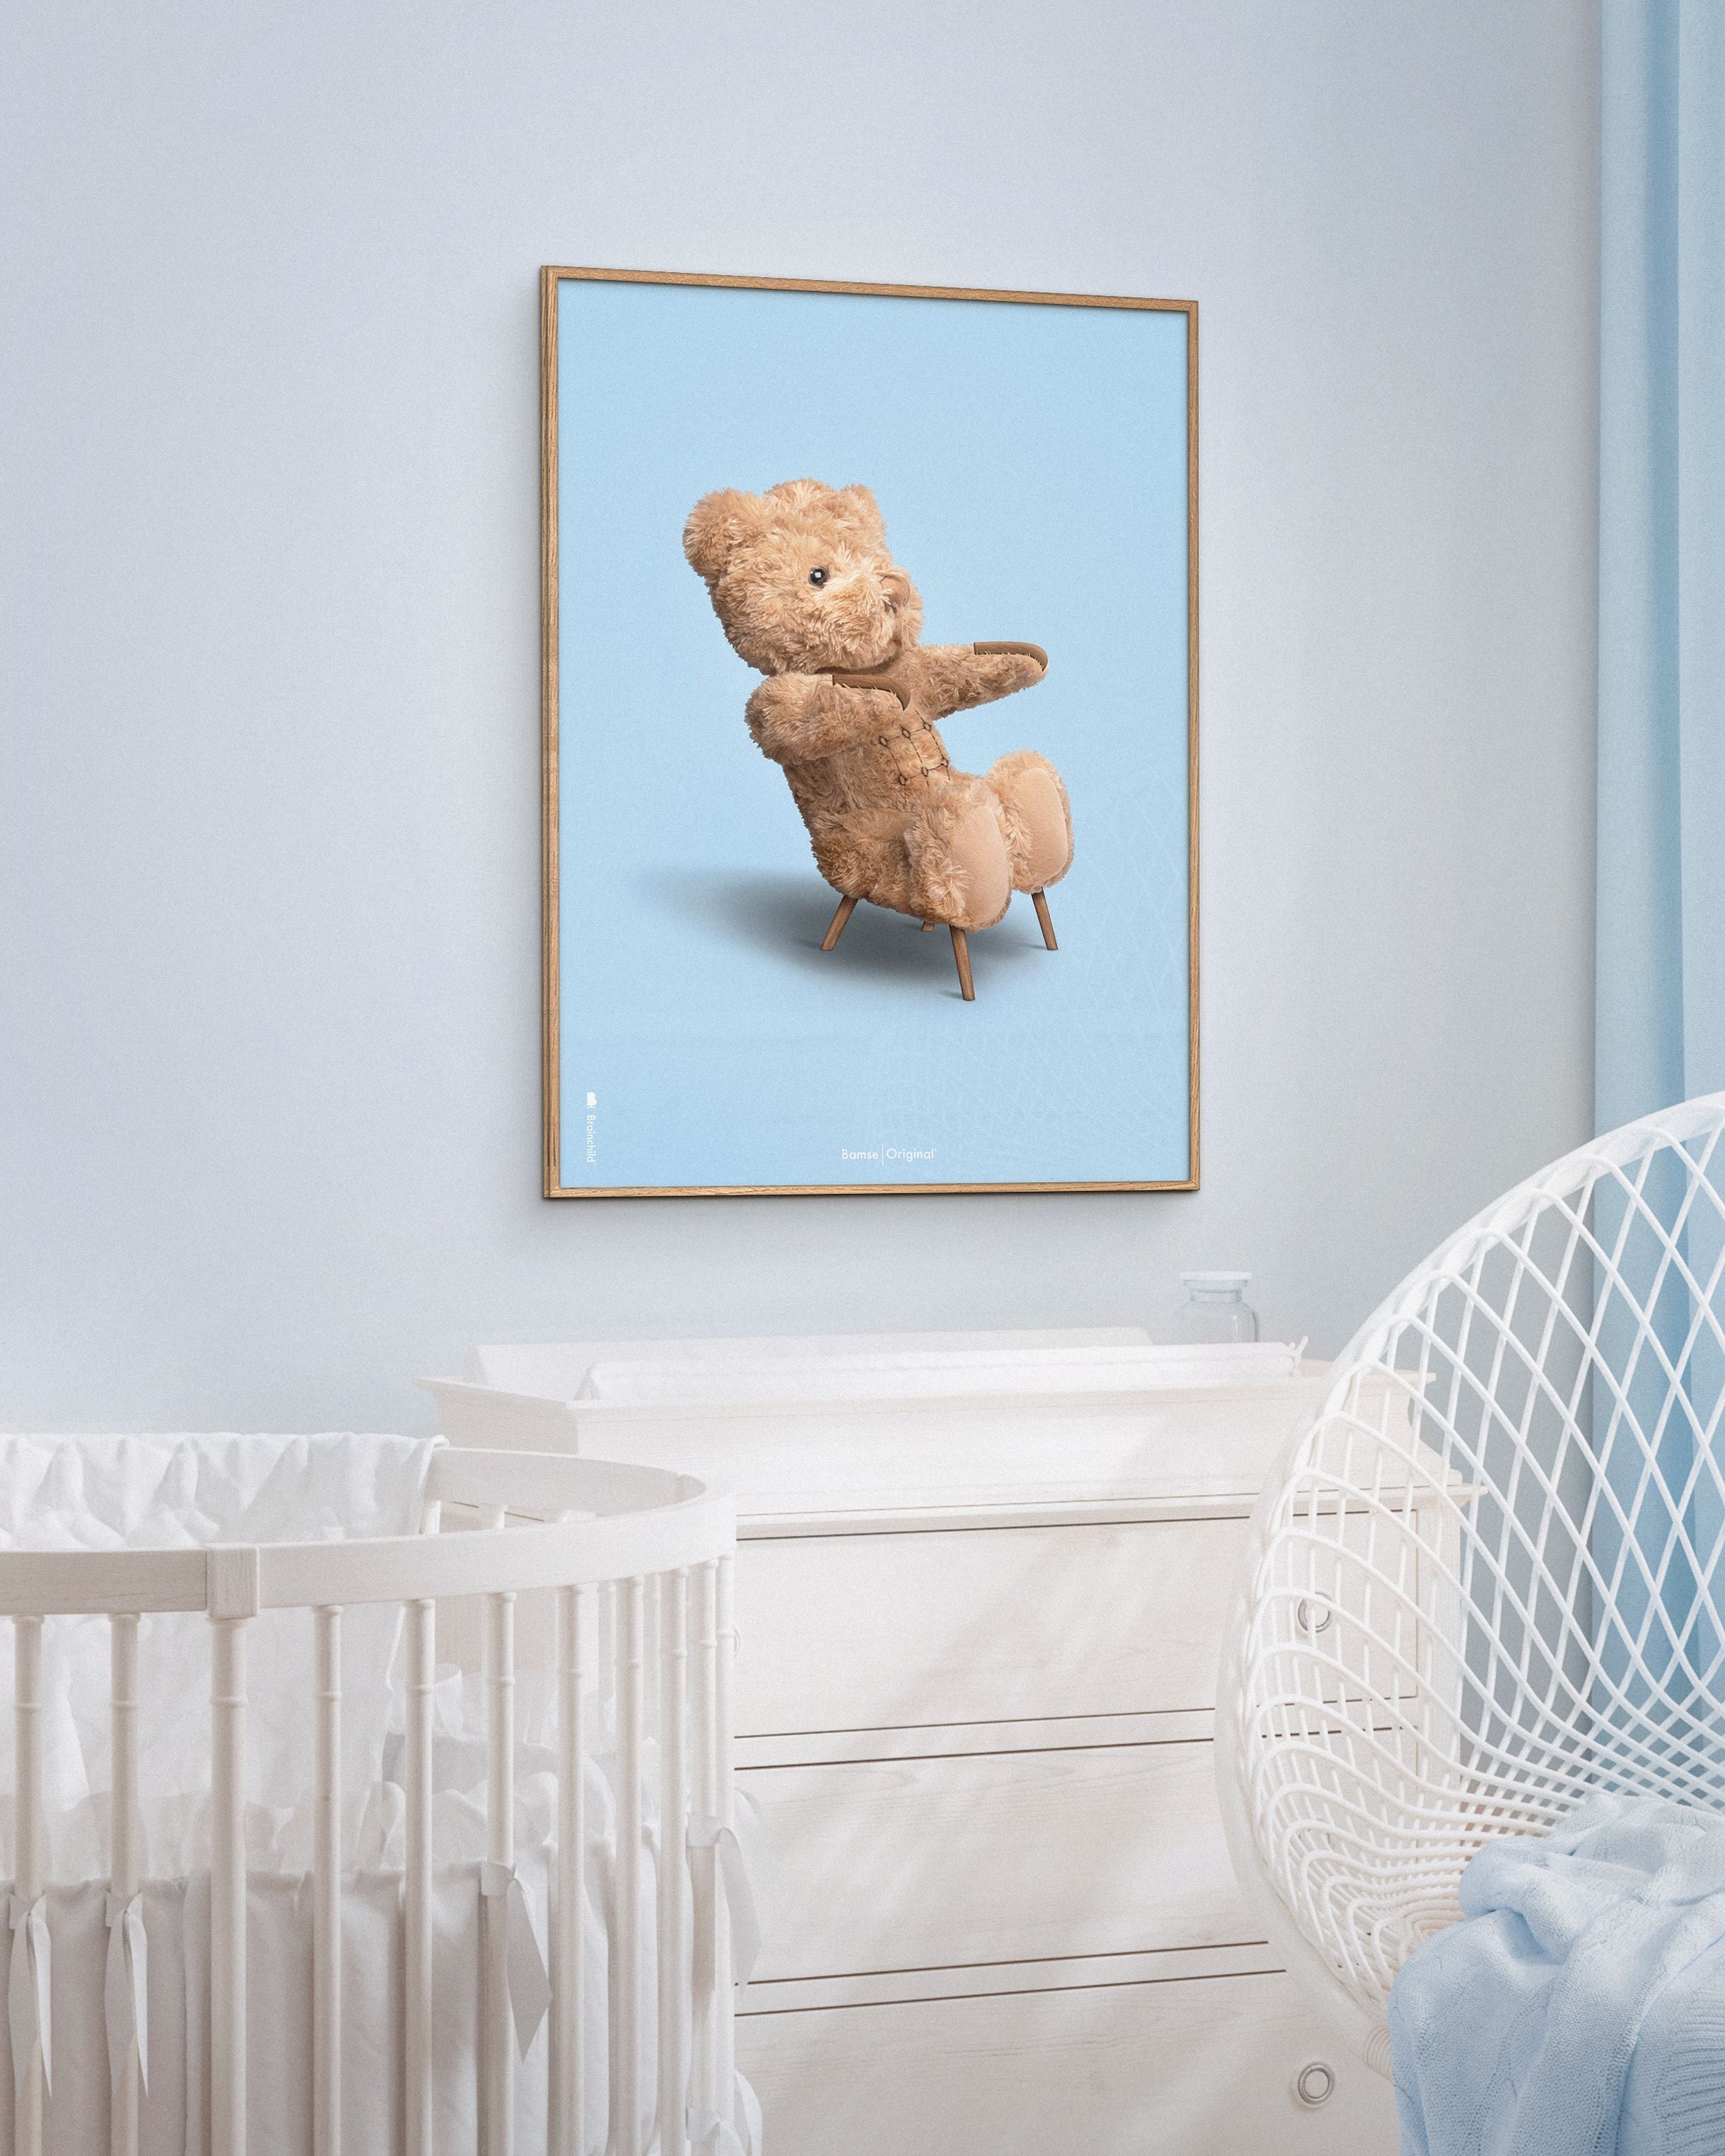 Brainchild Teddy Bear Classic plakát bez rámu 30x40 cm, světle modré pozadí